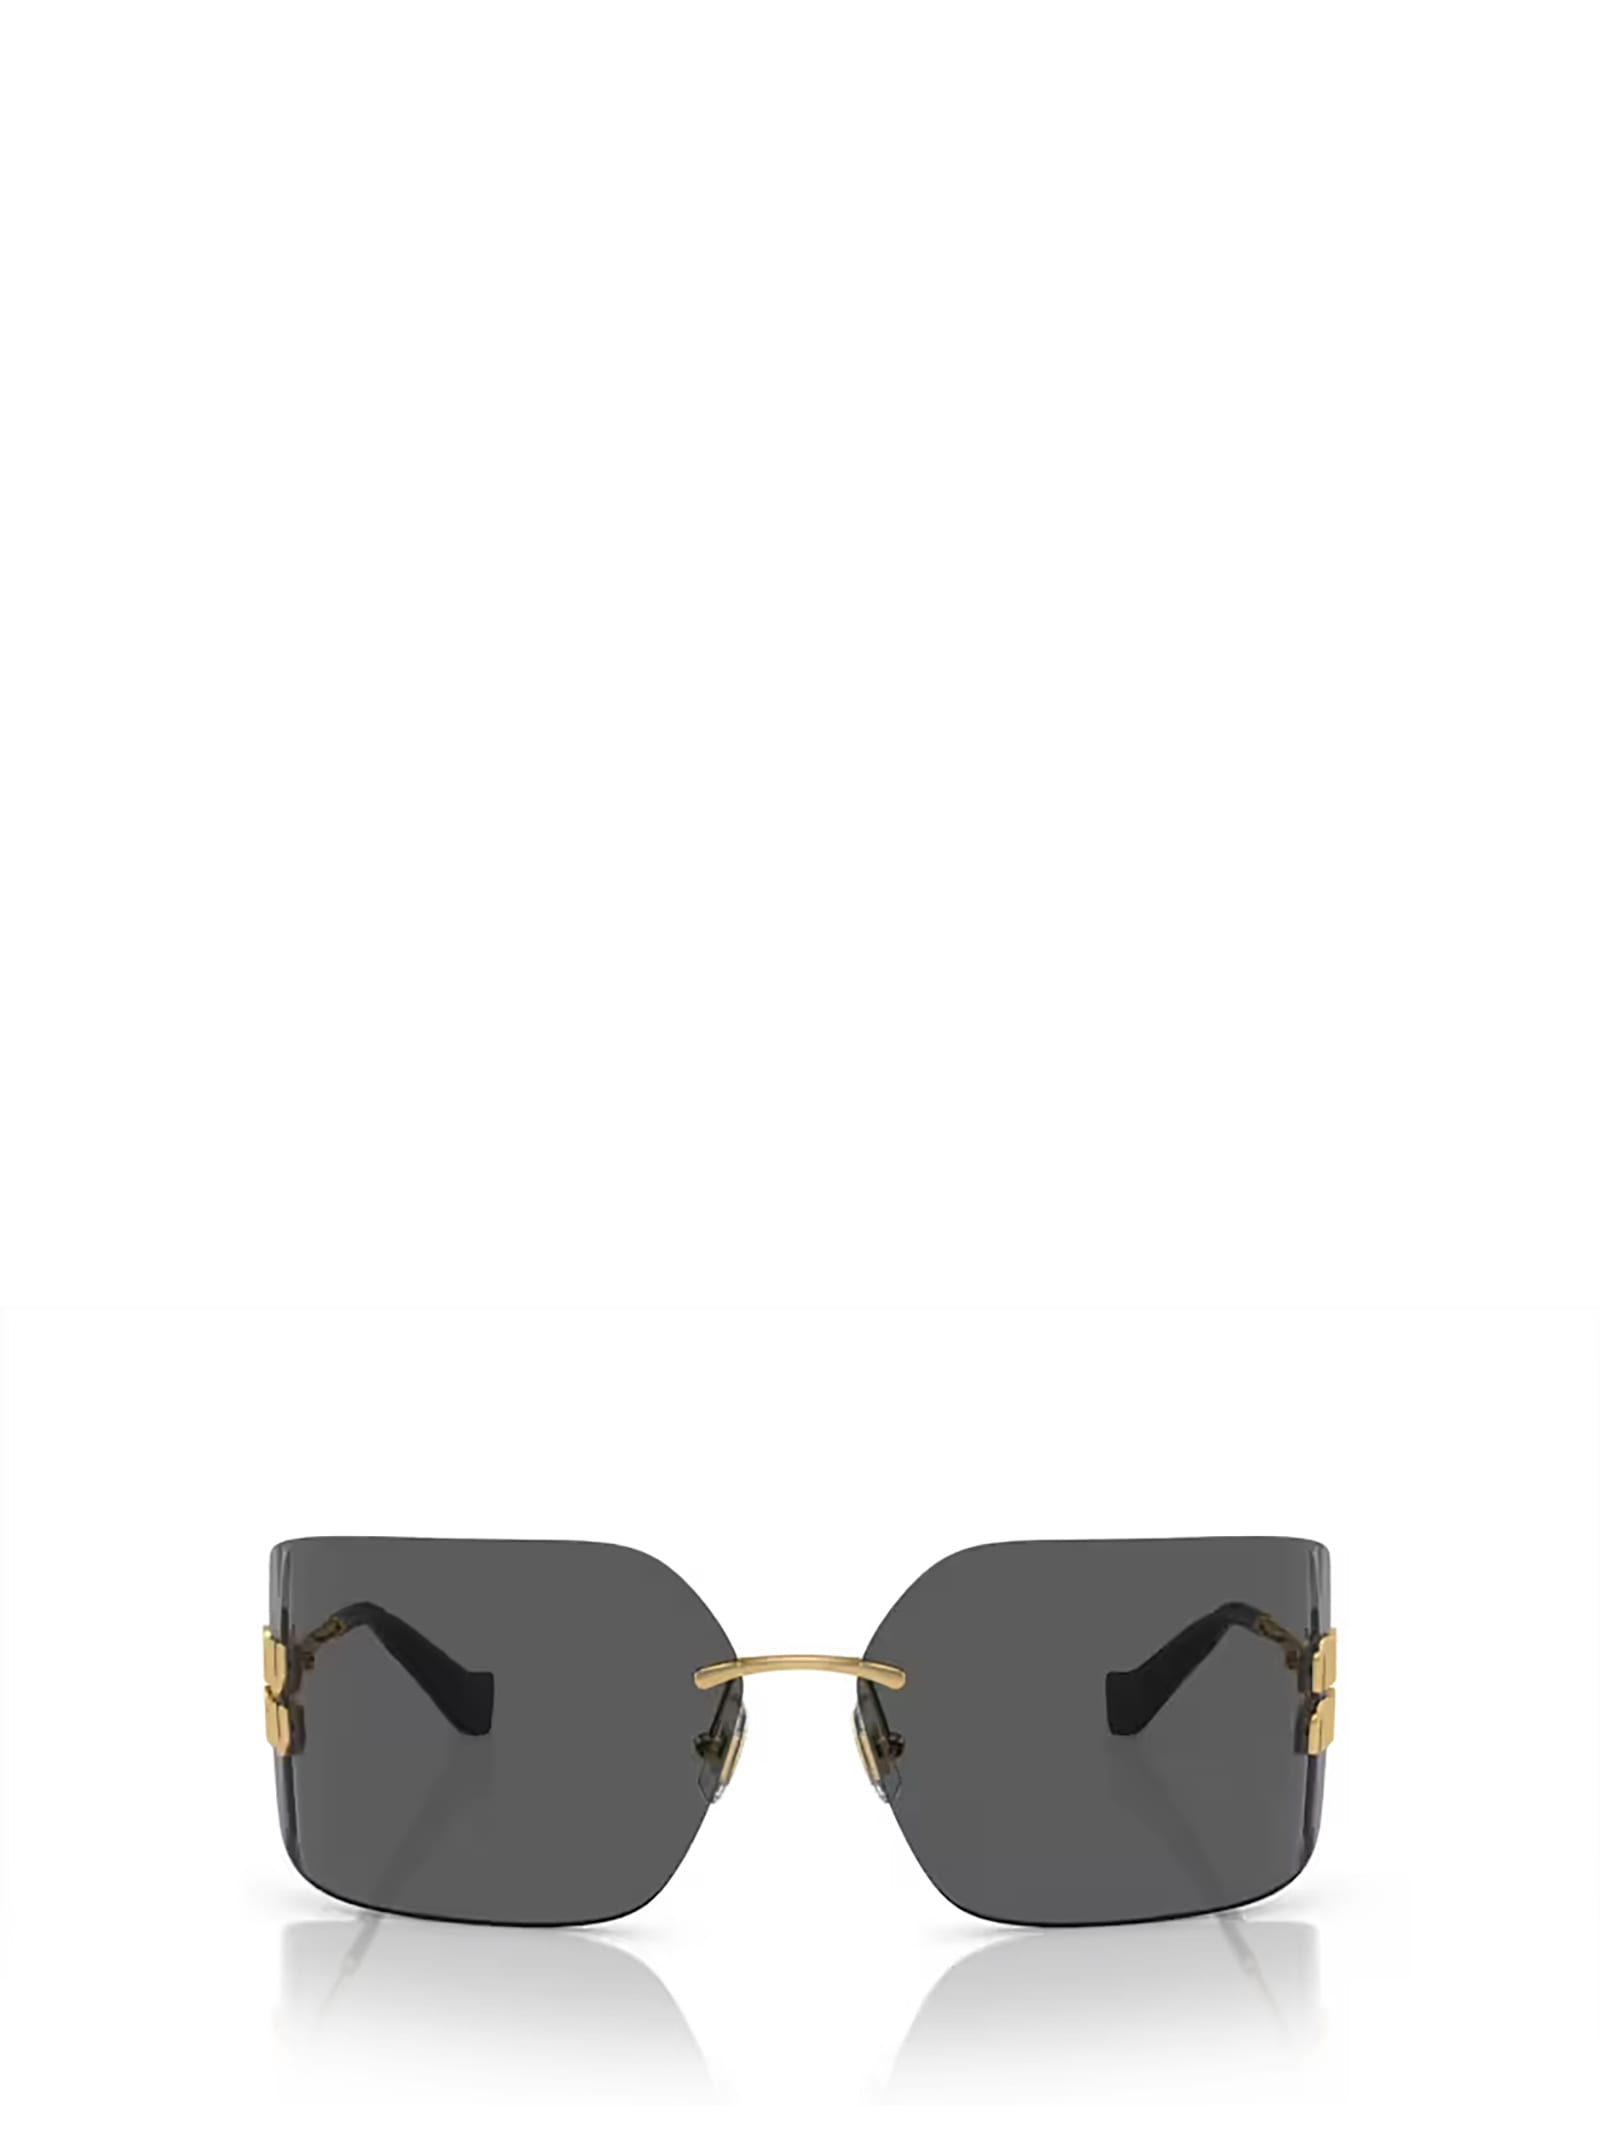 Miu Miu Mu 54ys Gold Sunglasses